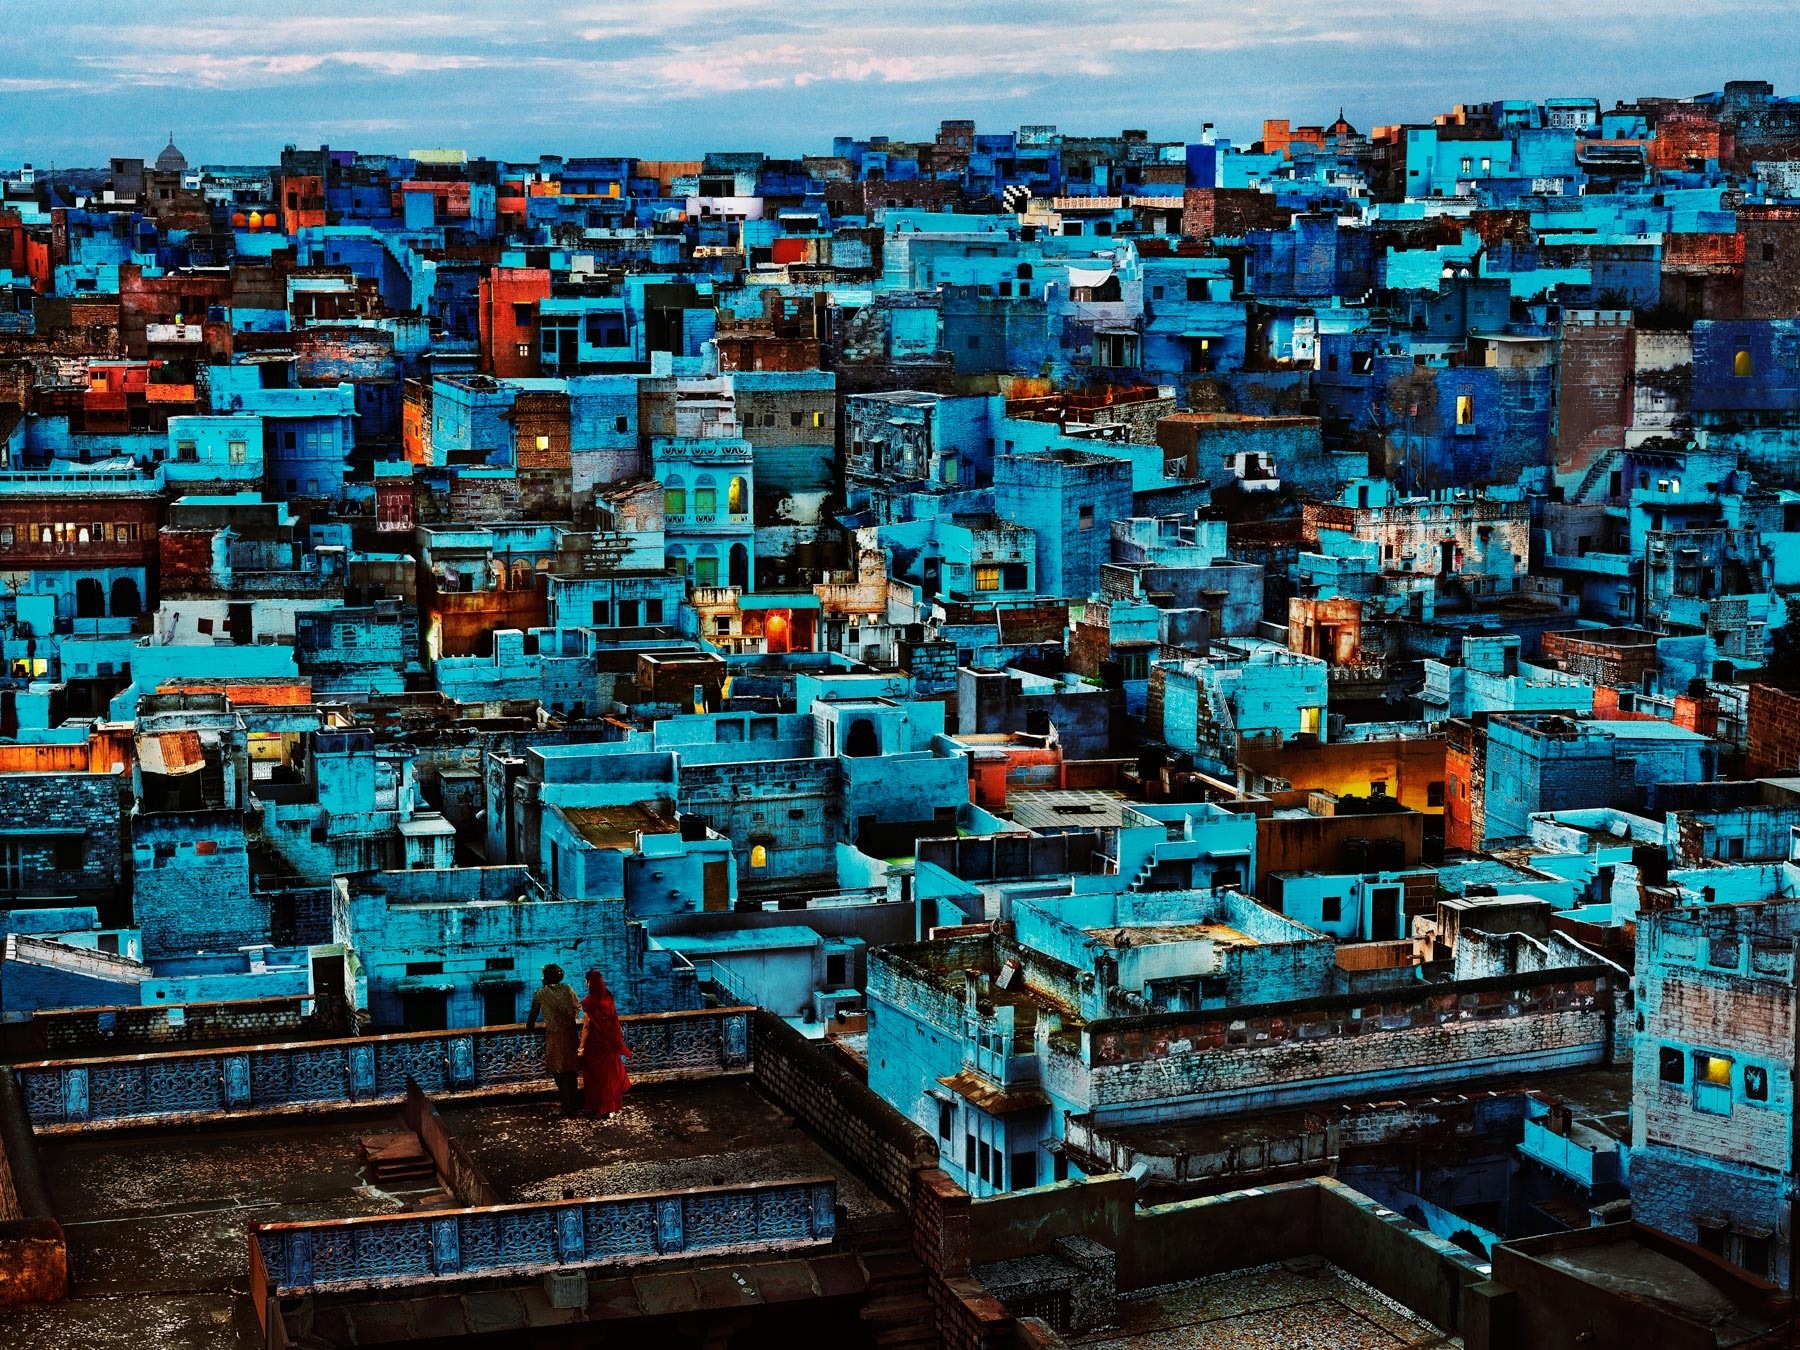 Steve McCurry's Blue City